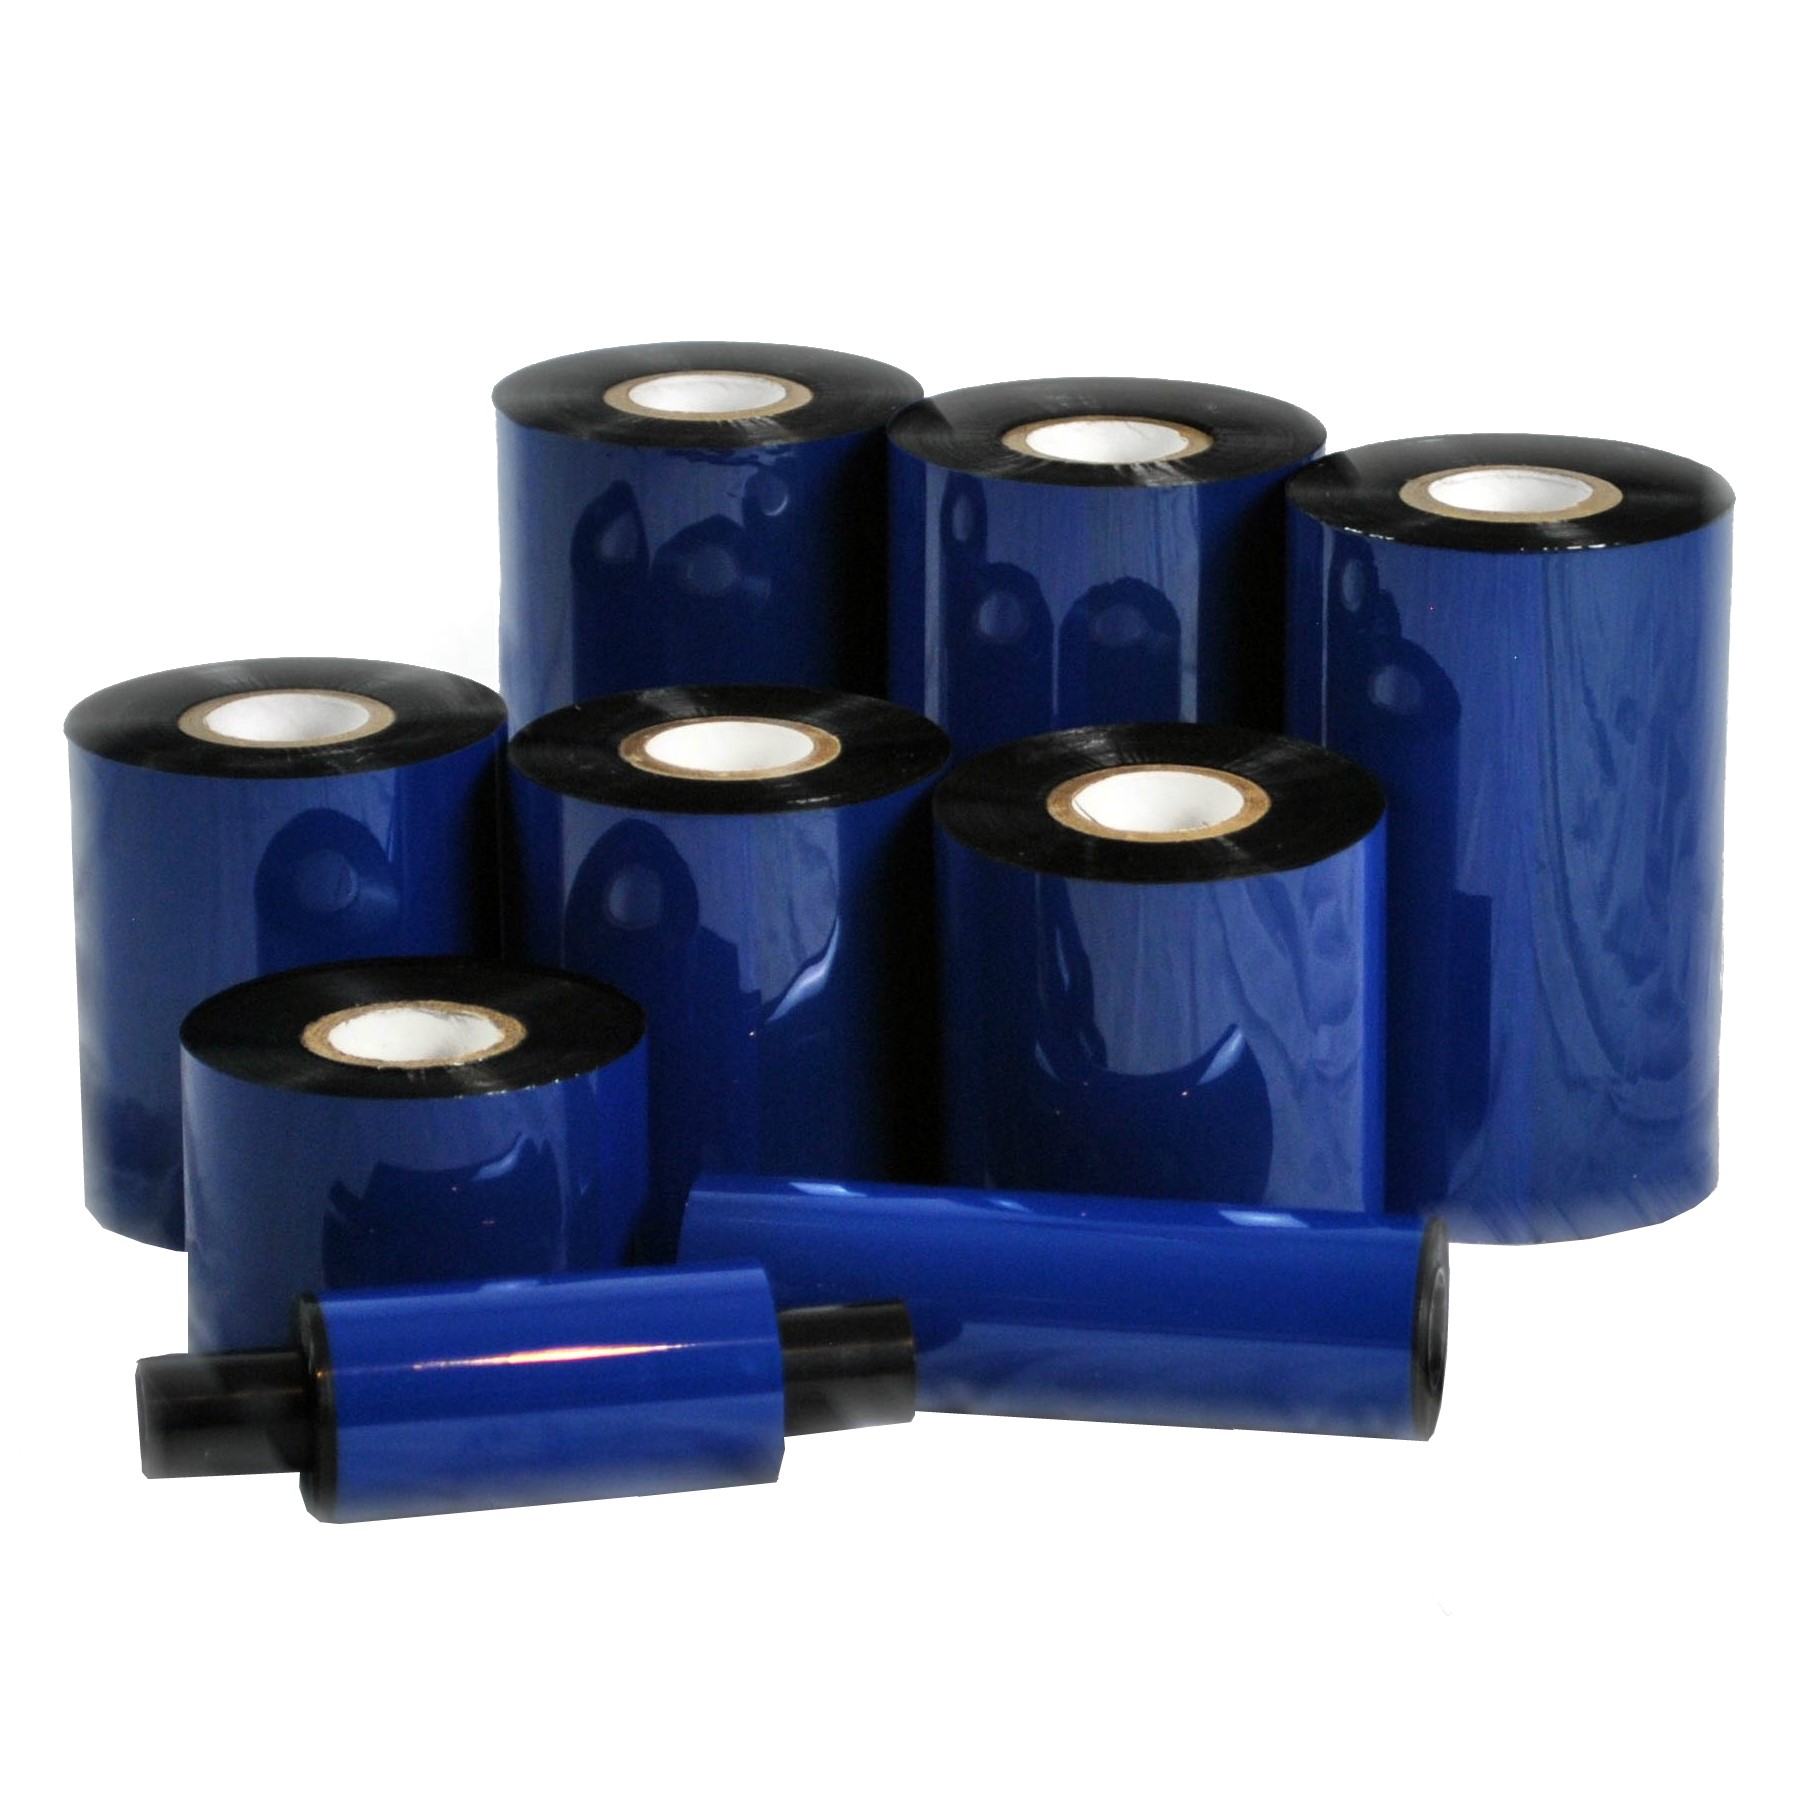 Wax 4.33 X 1476 Thermal Transfer Ribbon Black 24 Rolls/Case 110mm X 450m ZEBRA Printer 